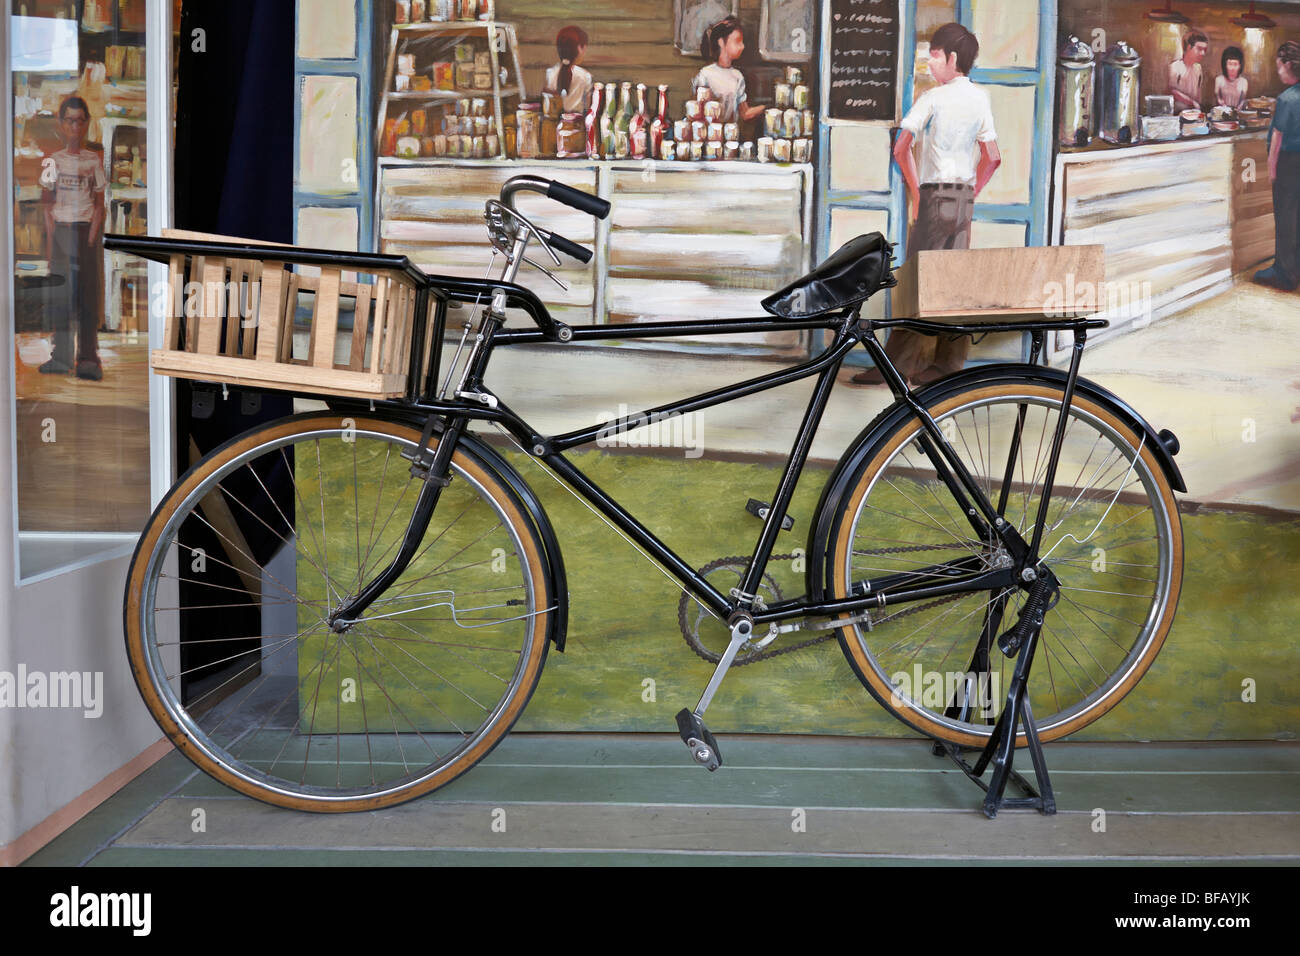 Vélo d'époque des années 60 exposé lors d'une exposition patrimoniale.  Thaïlande S. E. Asie Photo Stock - Alamy